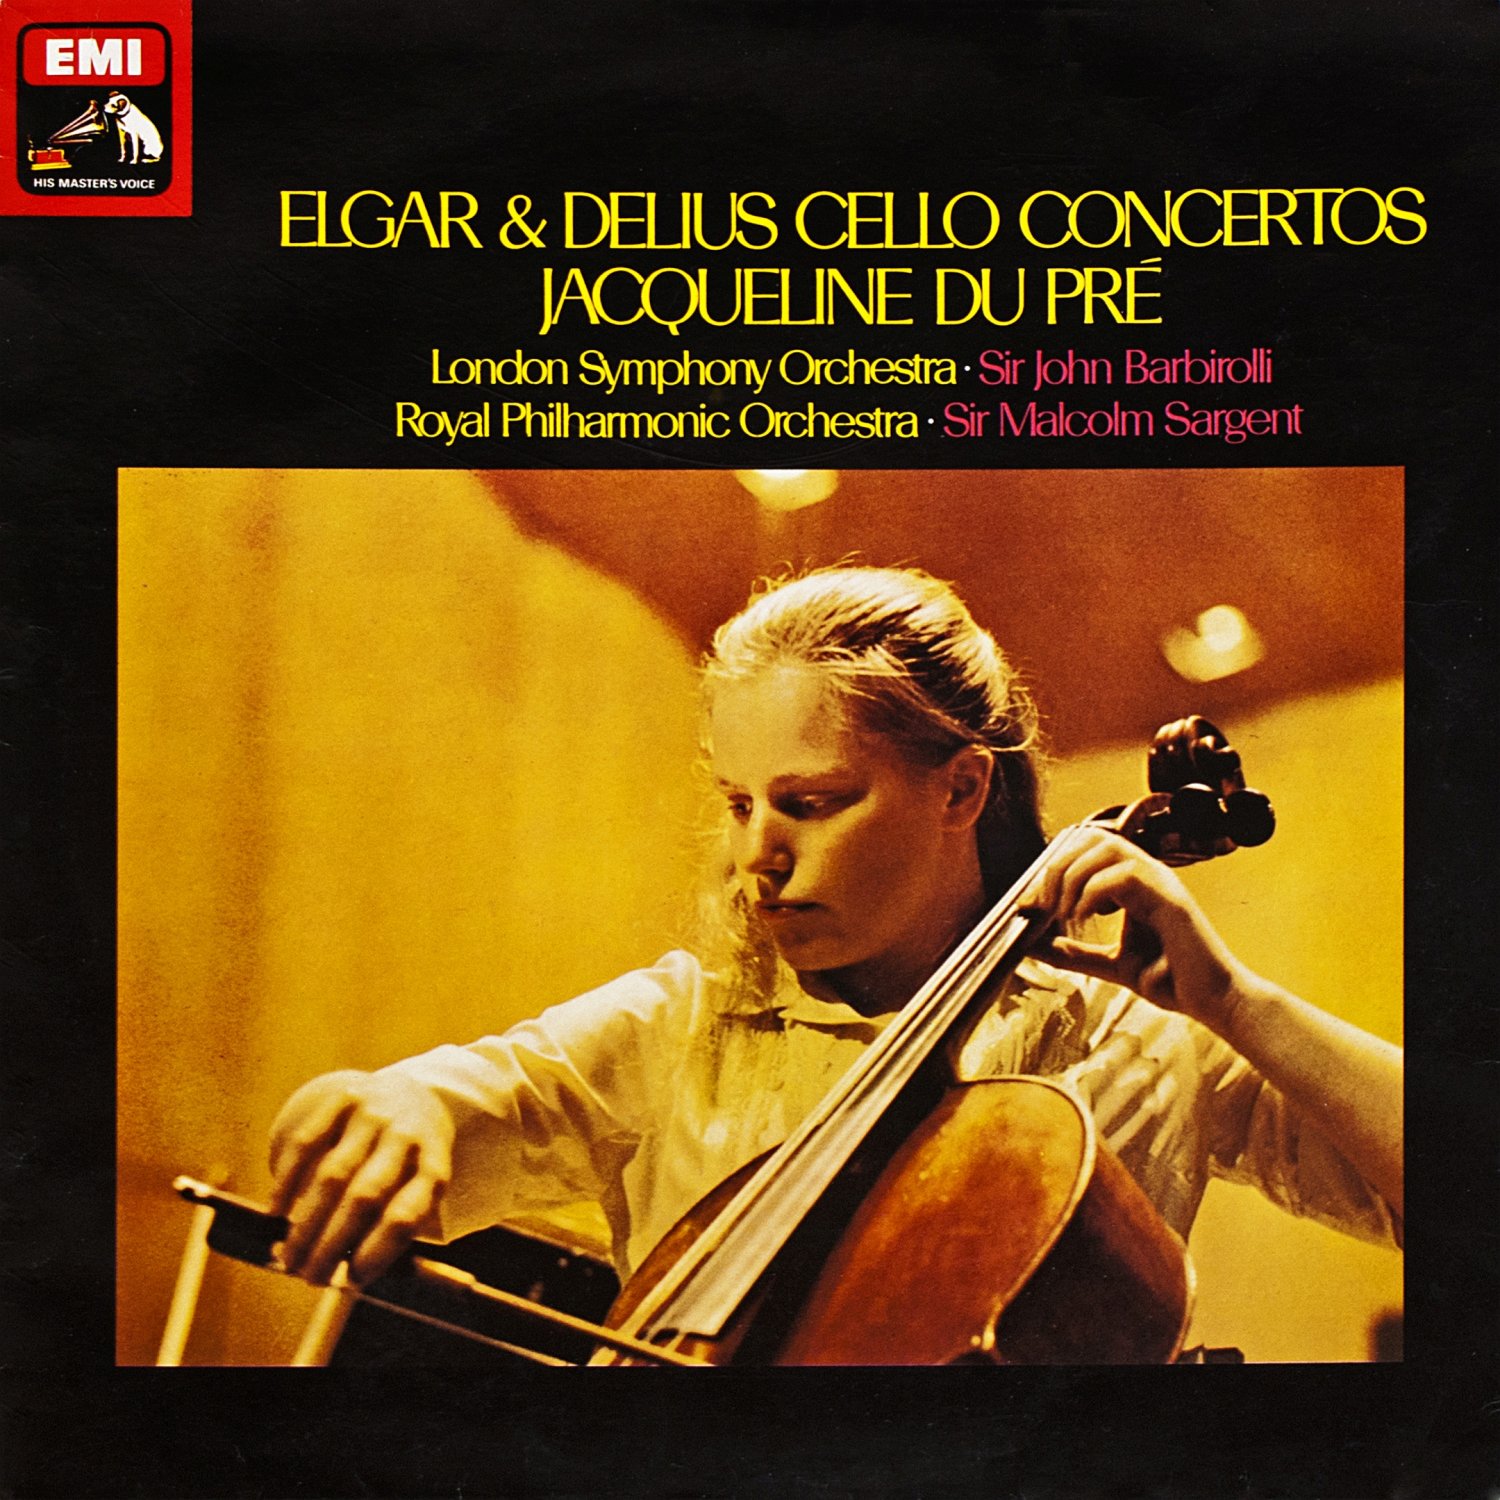 front - Jaqueline Du Pre - Elgar, Delius - Cello Concerto.jpg